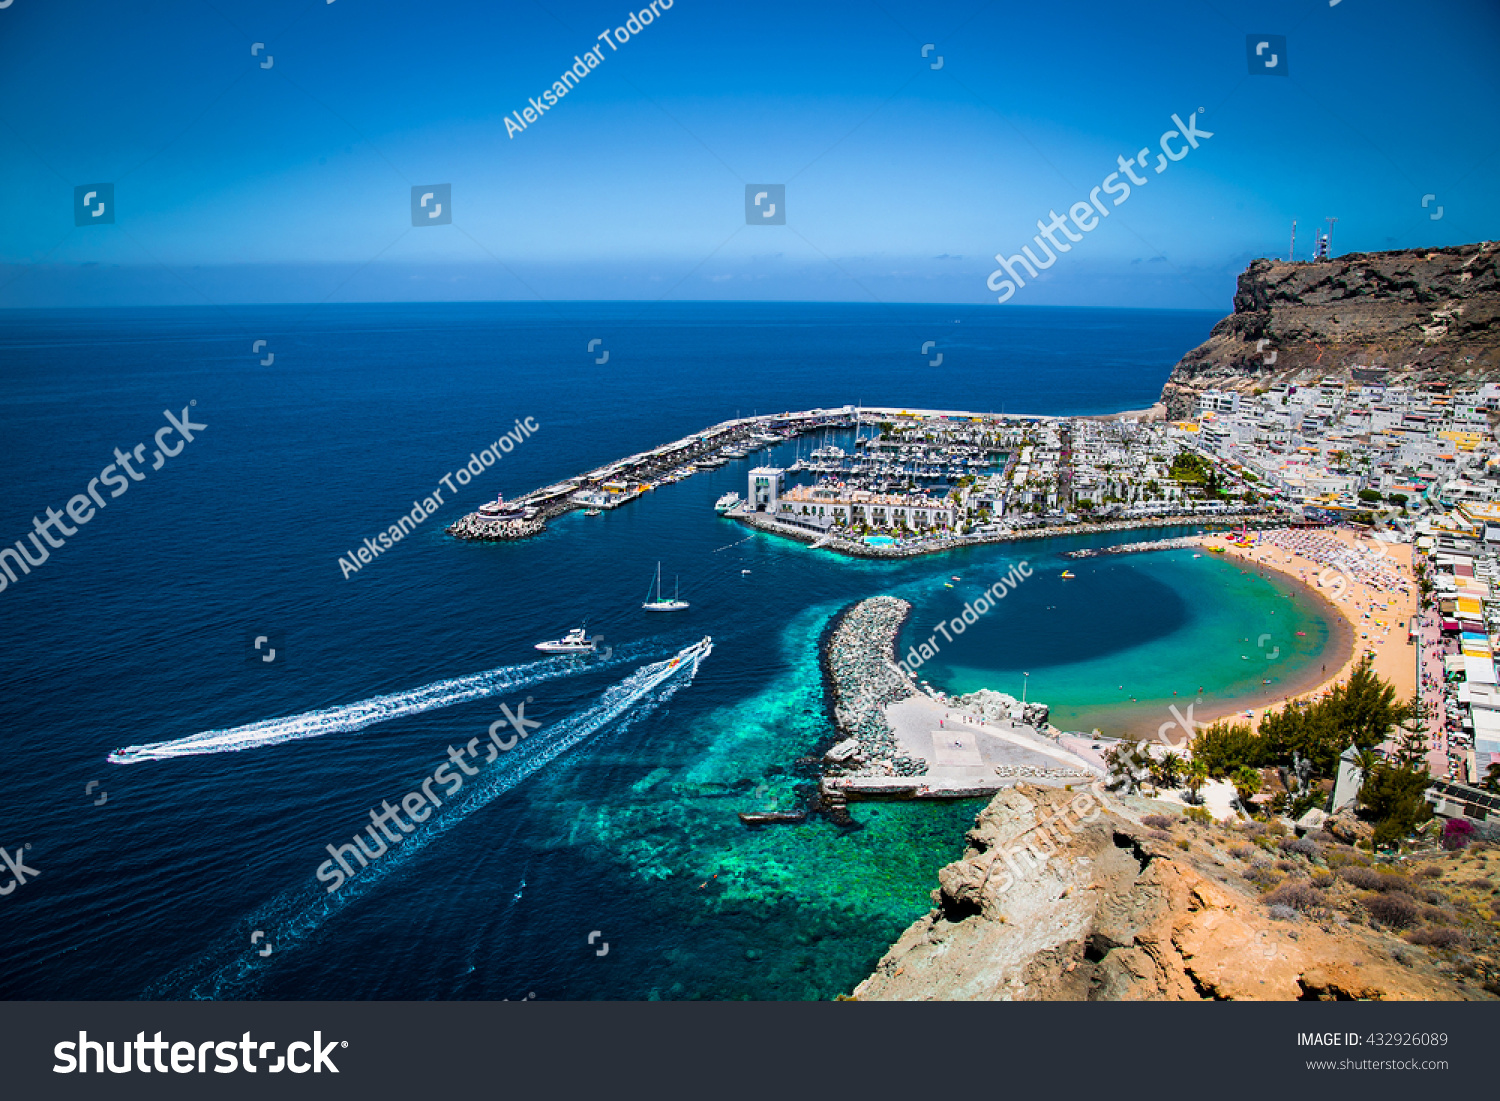 Puerto de Mogan town on the coast of Gran Canaria island, Spain. #432926089